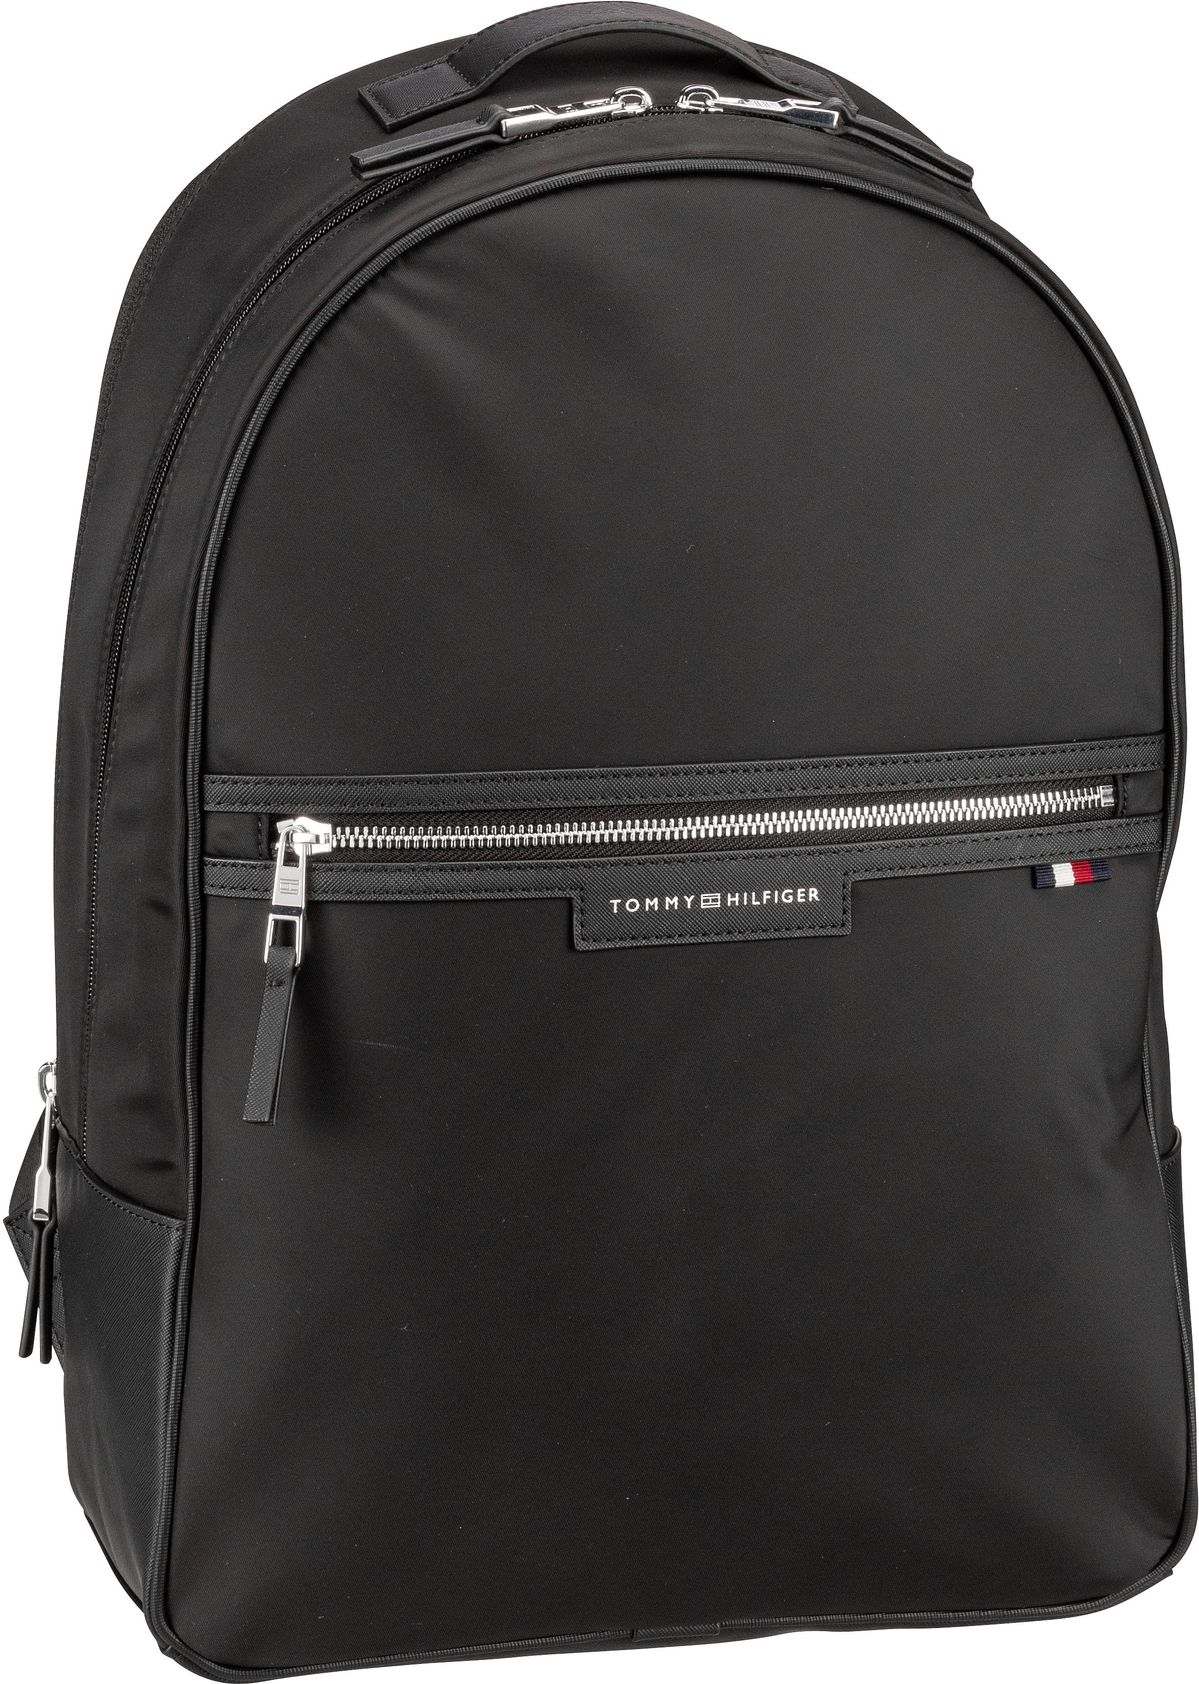 Tommy Hilfiger TH Urban Repreve Backpack PSP24  in Schwarz (22.6 Liter), Rucksack / Backpack